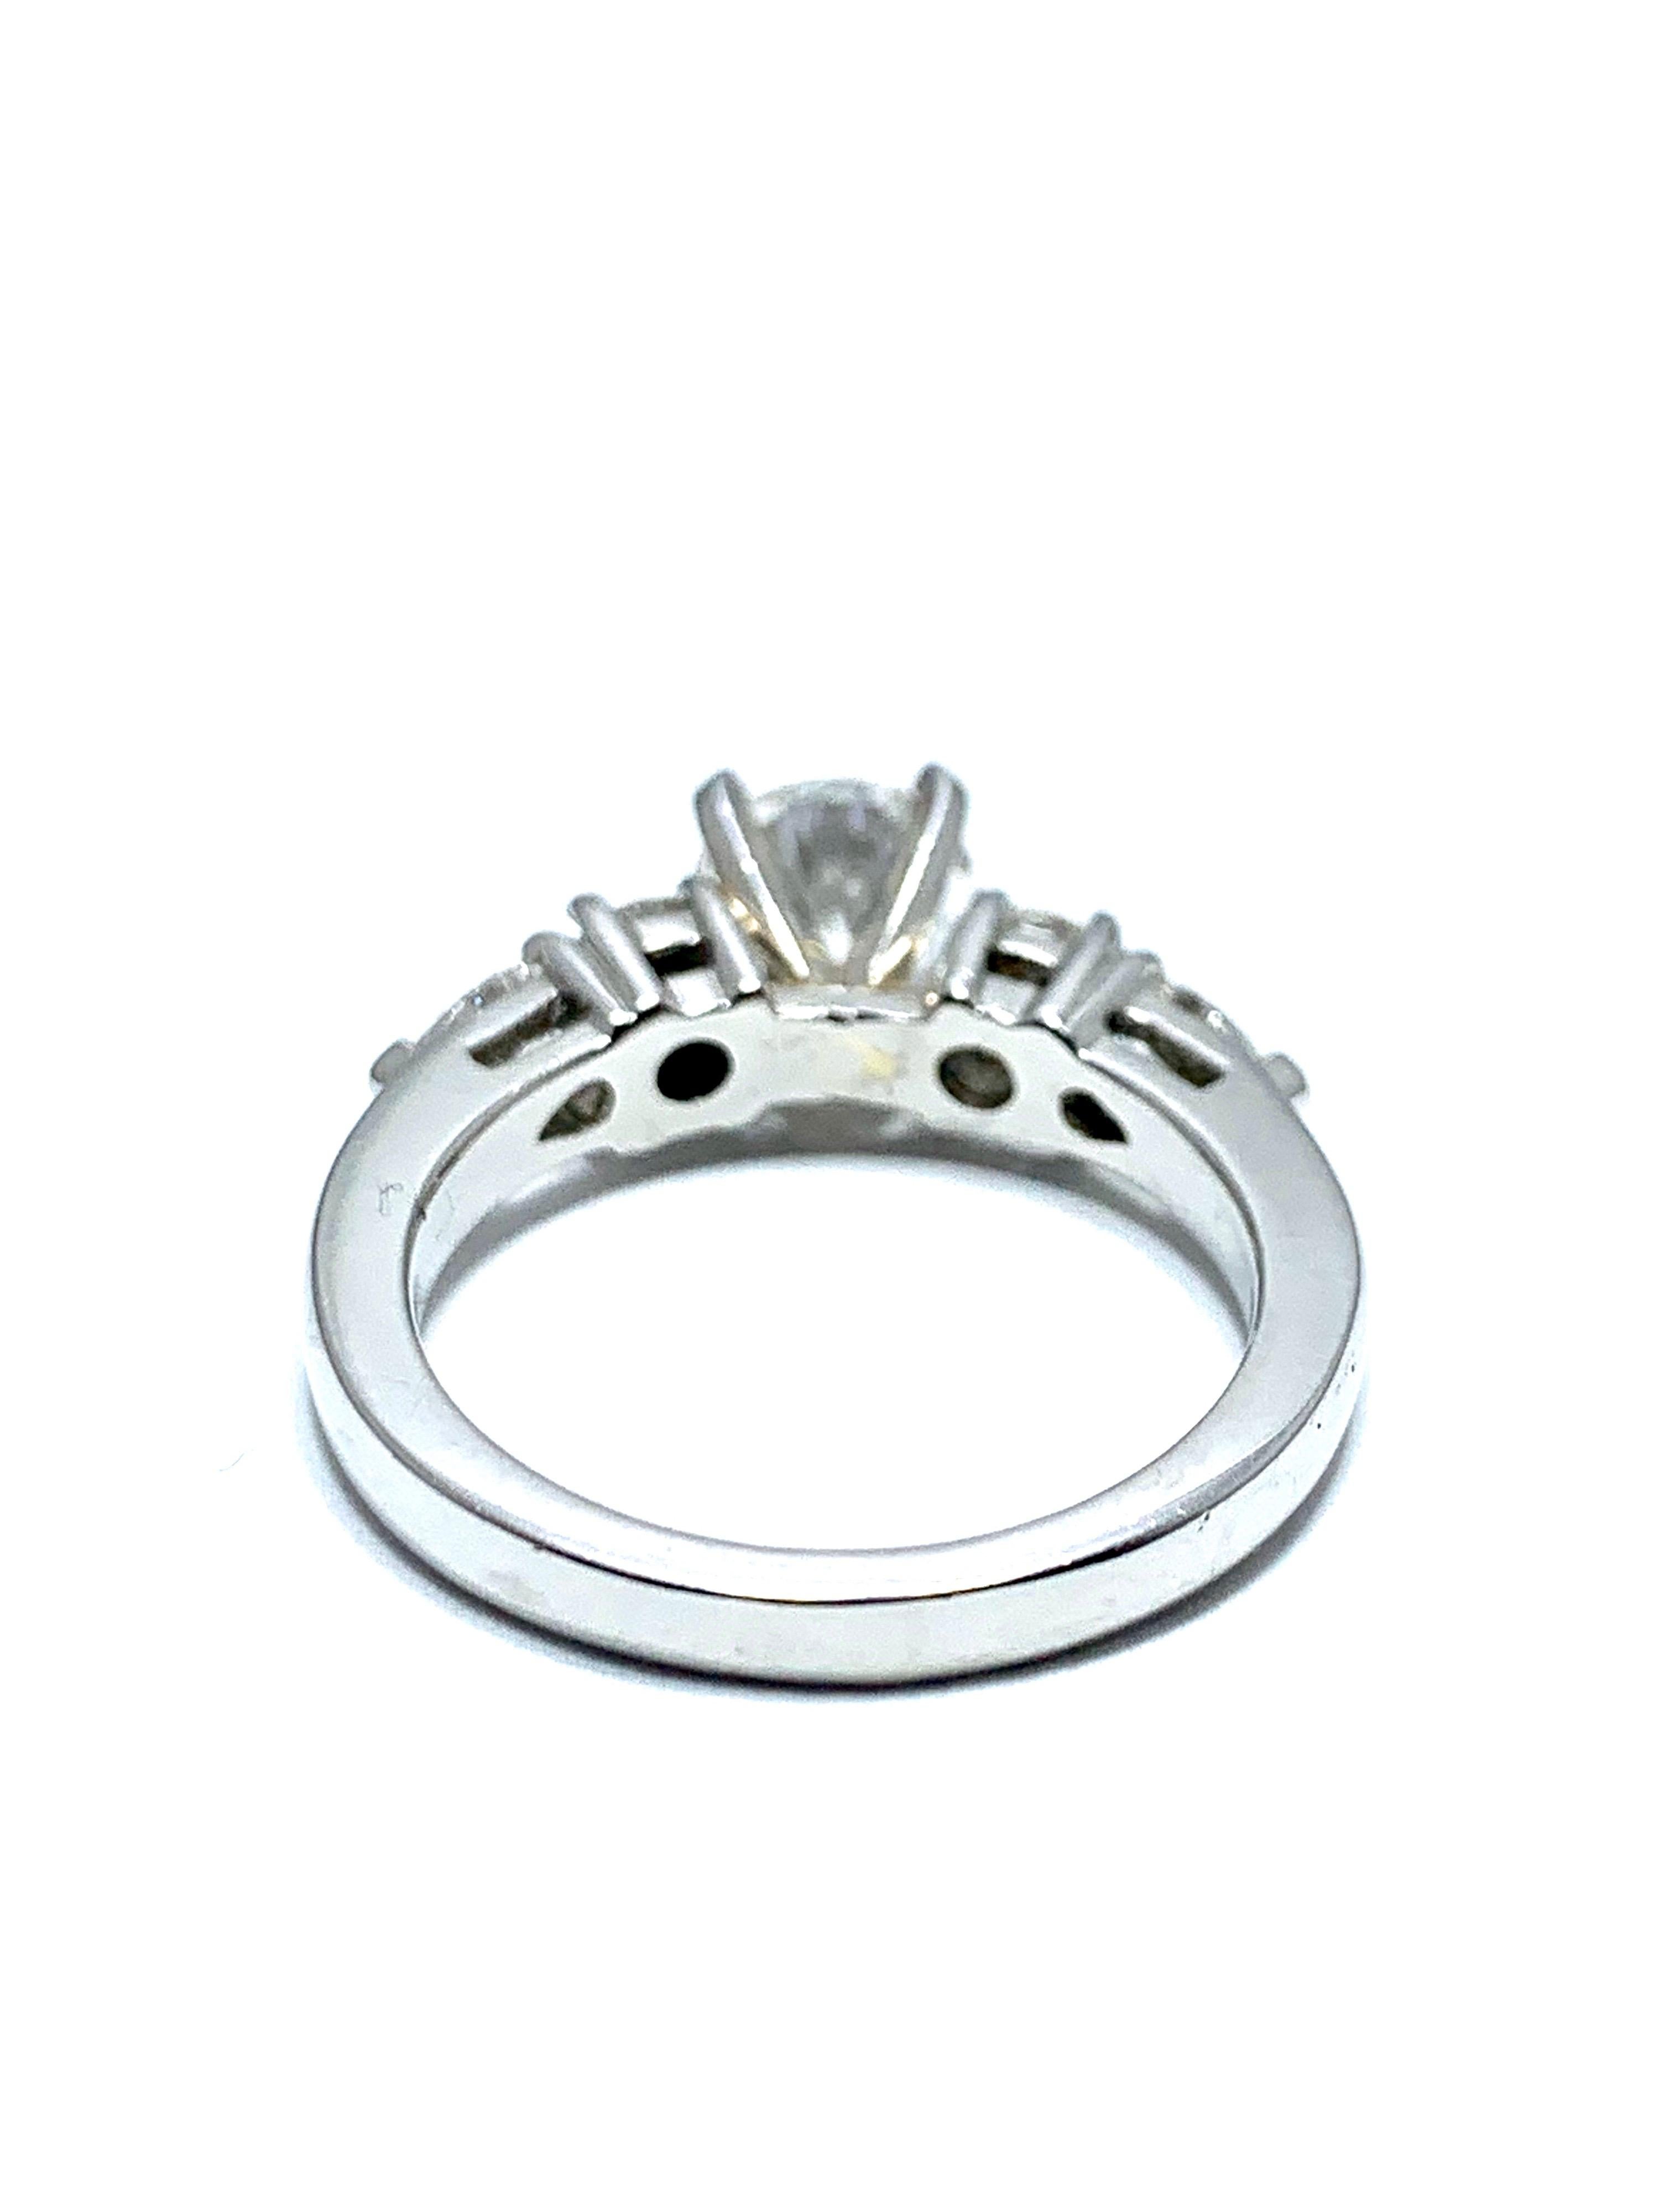 Round Cut 1.05 Carat Round Brilliant Cut Diamond and Platinum Engagement Ring